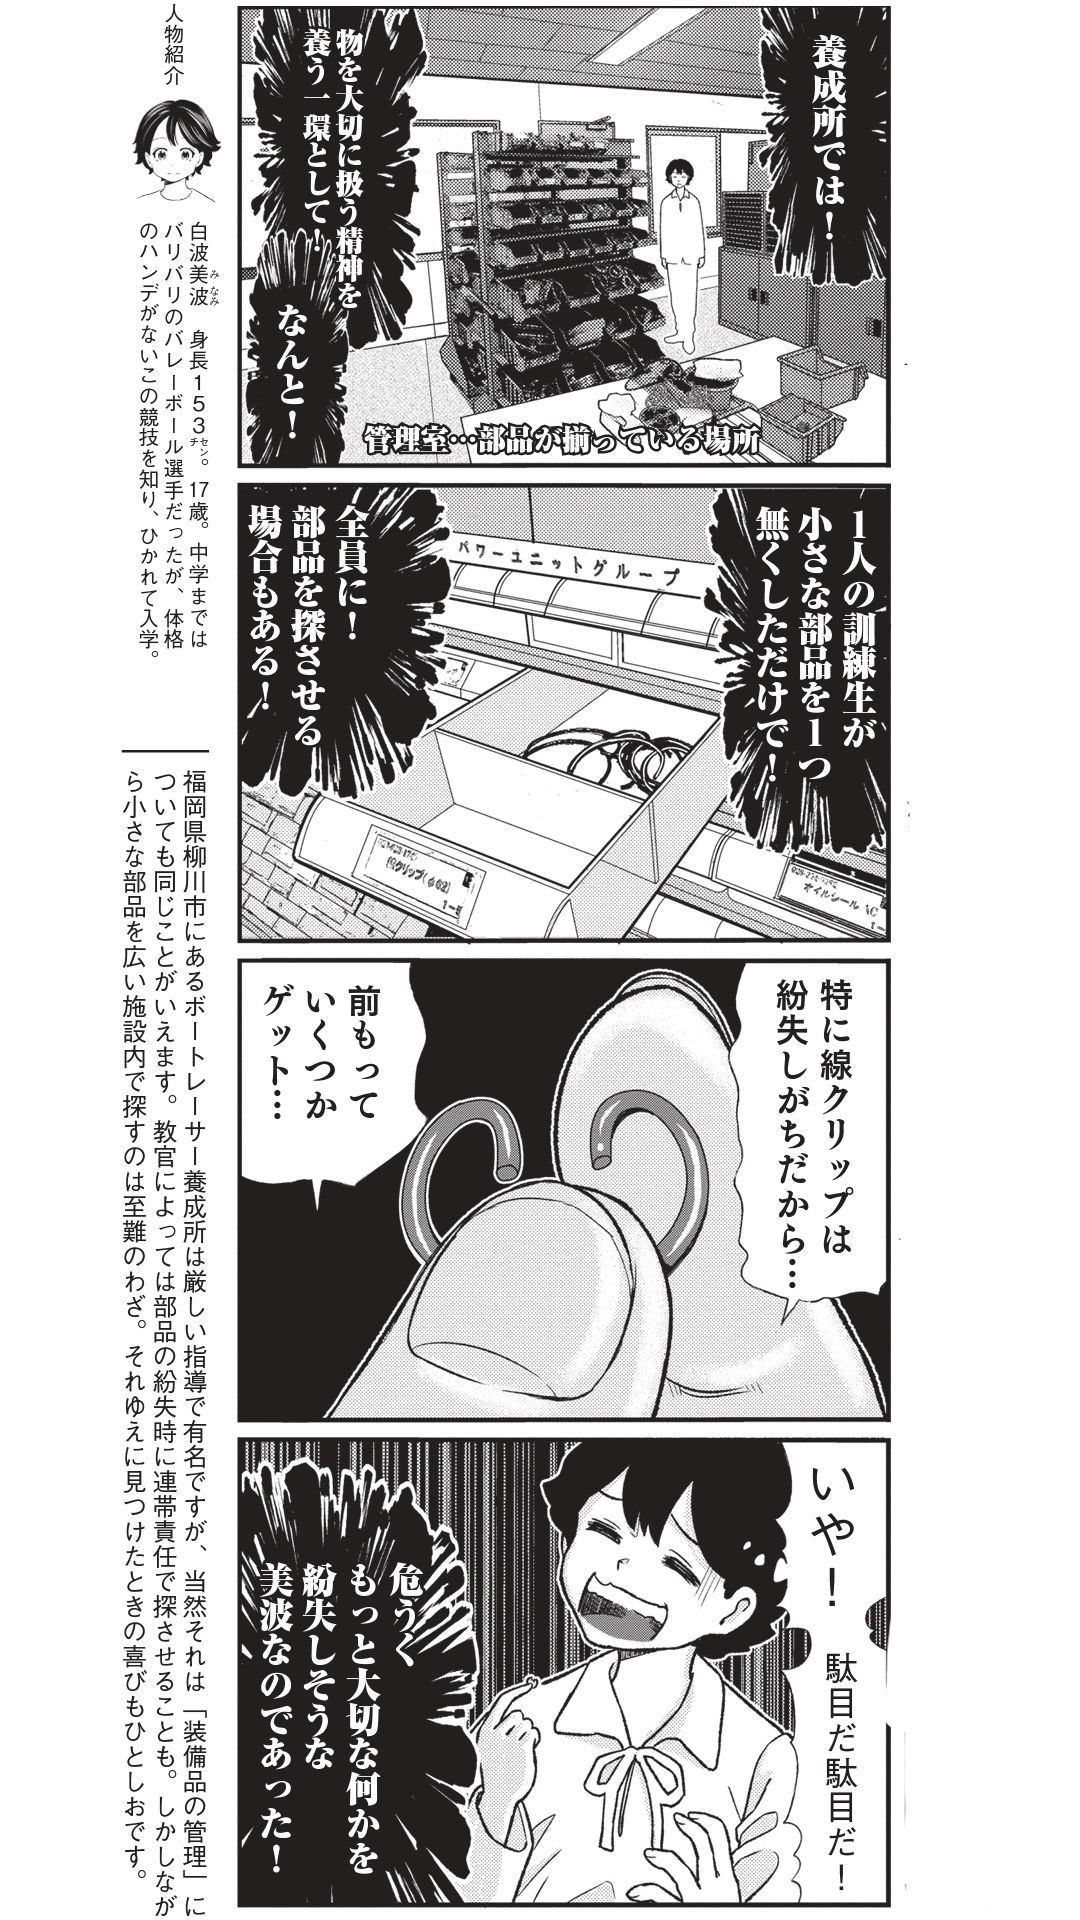 4コマ漫画『ボートレース訓練生・美波』こぼれ話「部品の紛失騒動」の画像